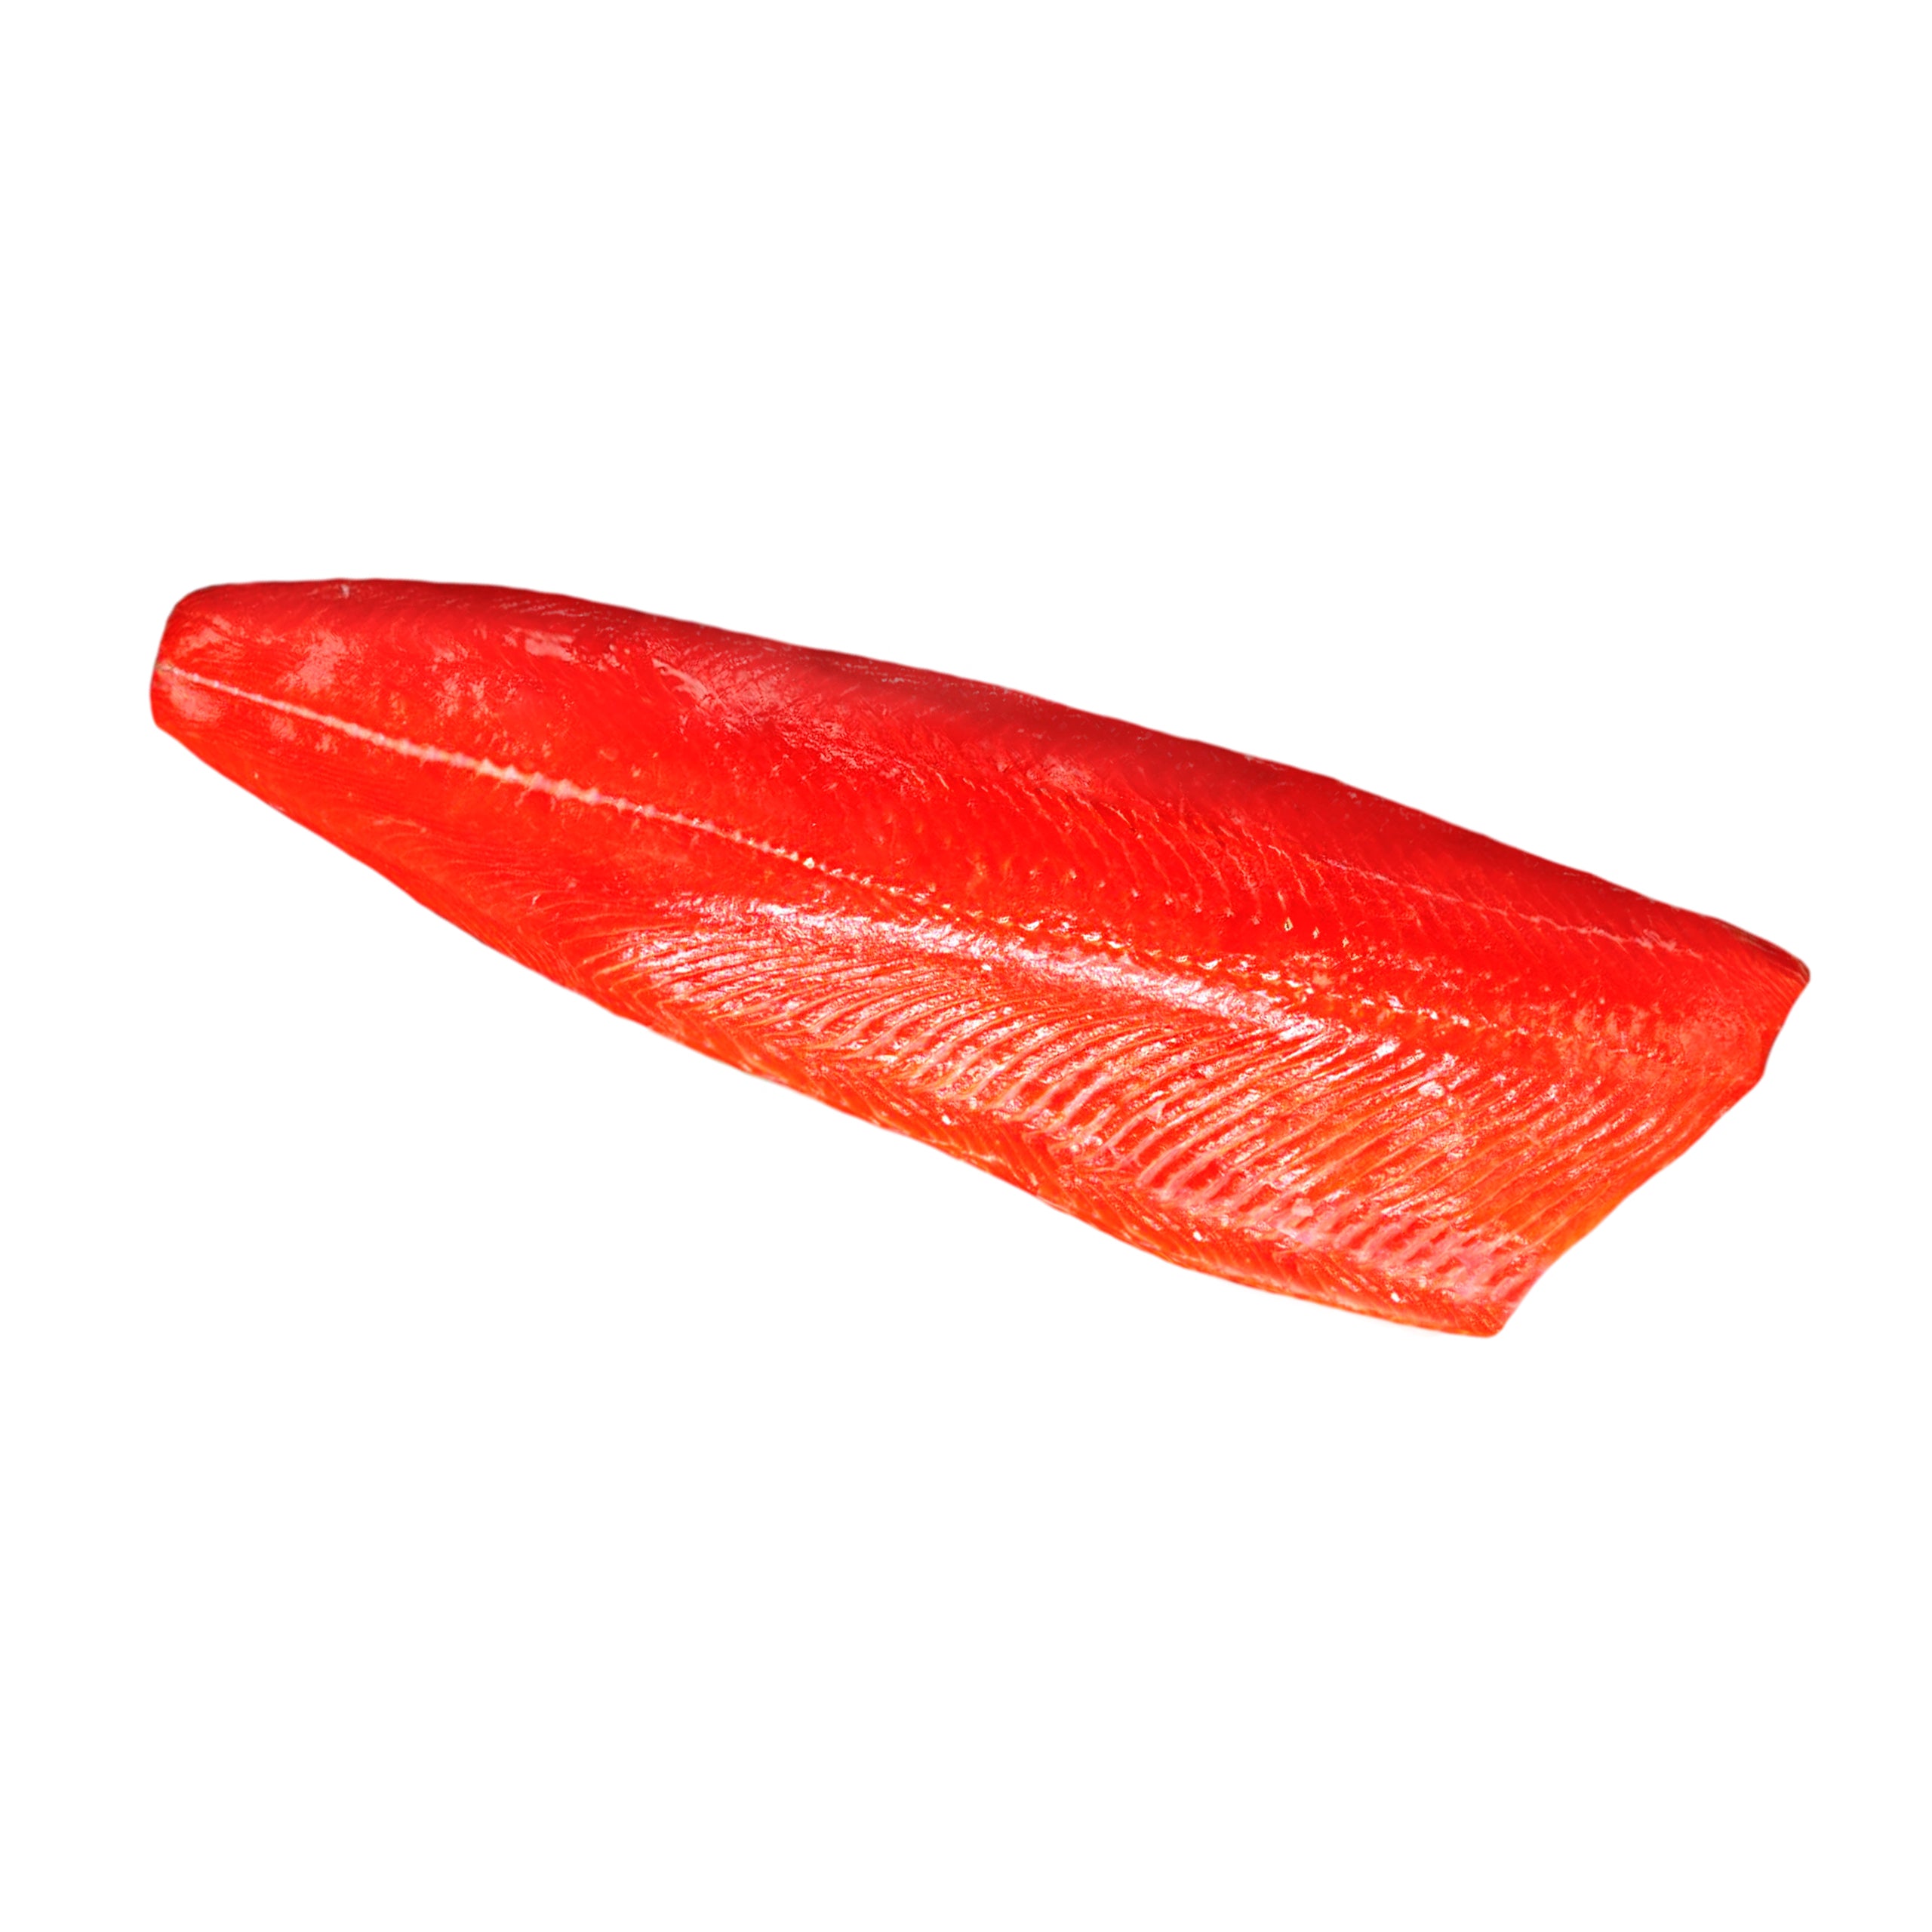 Cold Smoked Sockeye salmon